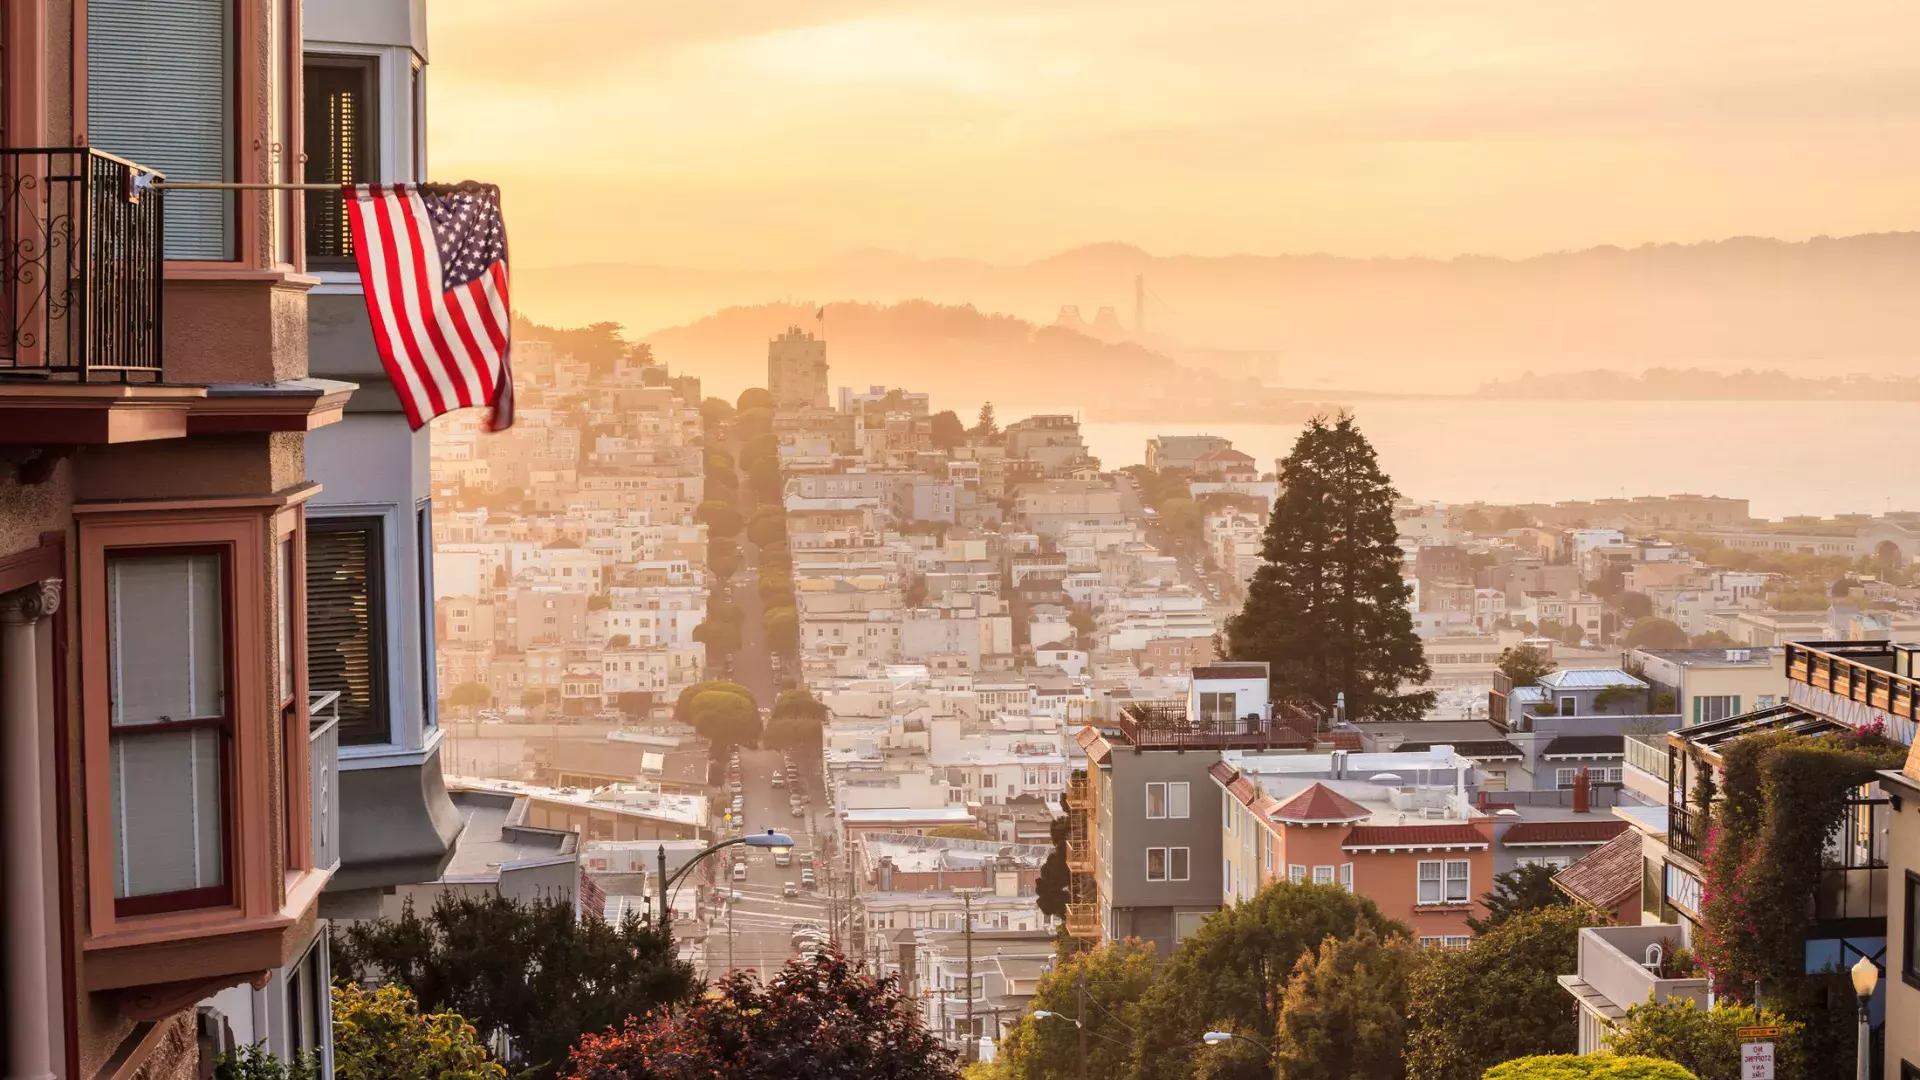 Une vue de San Francisco depuis le sommet d’une colline, avec un drapeau américain flottant au premier plan.